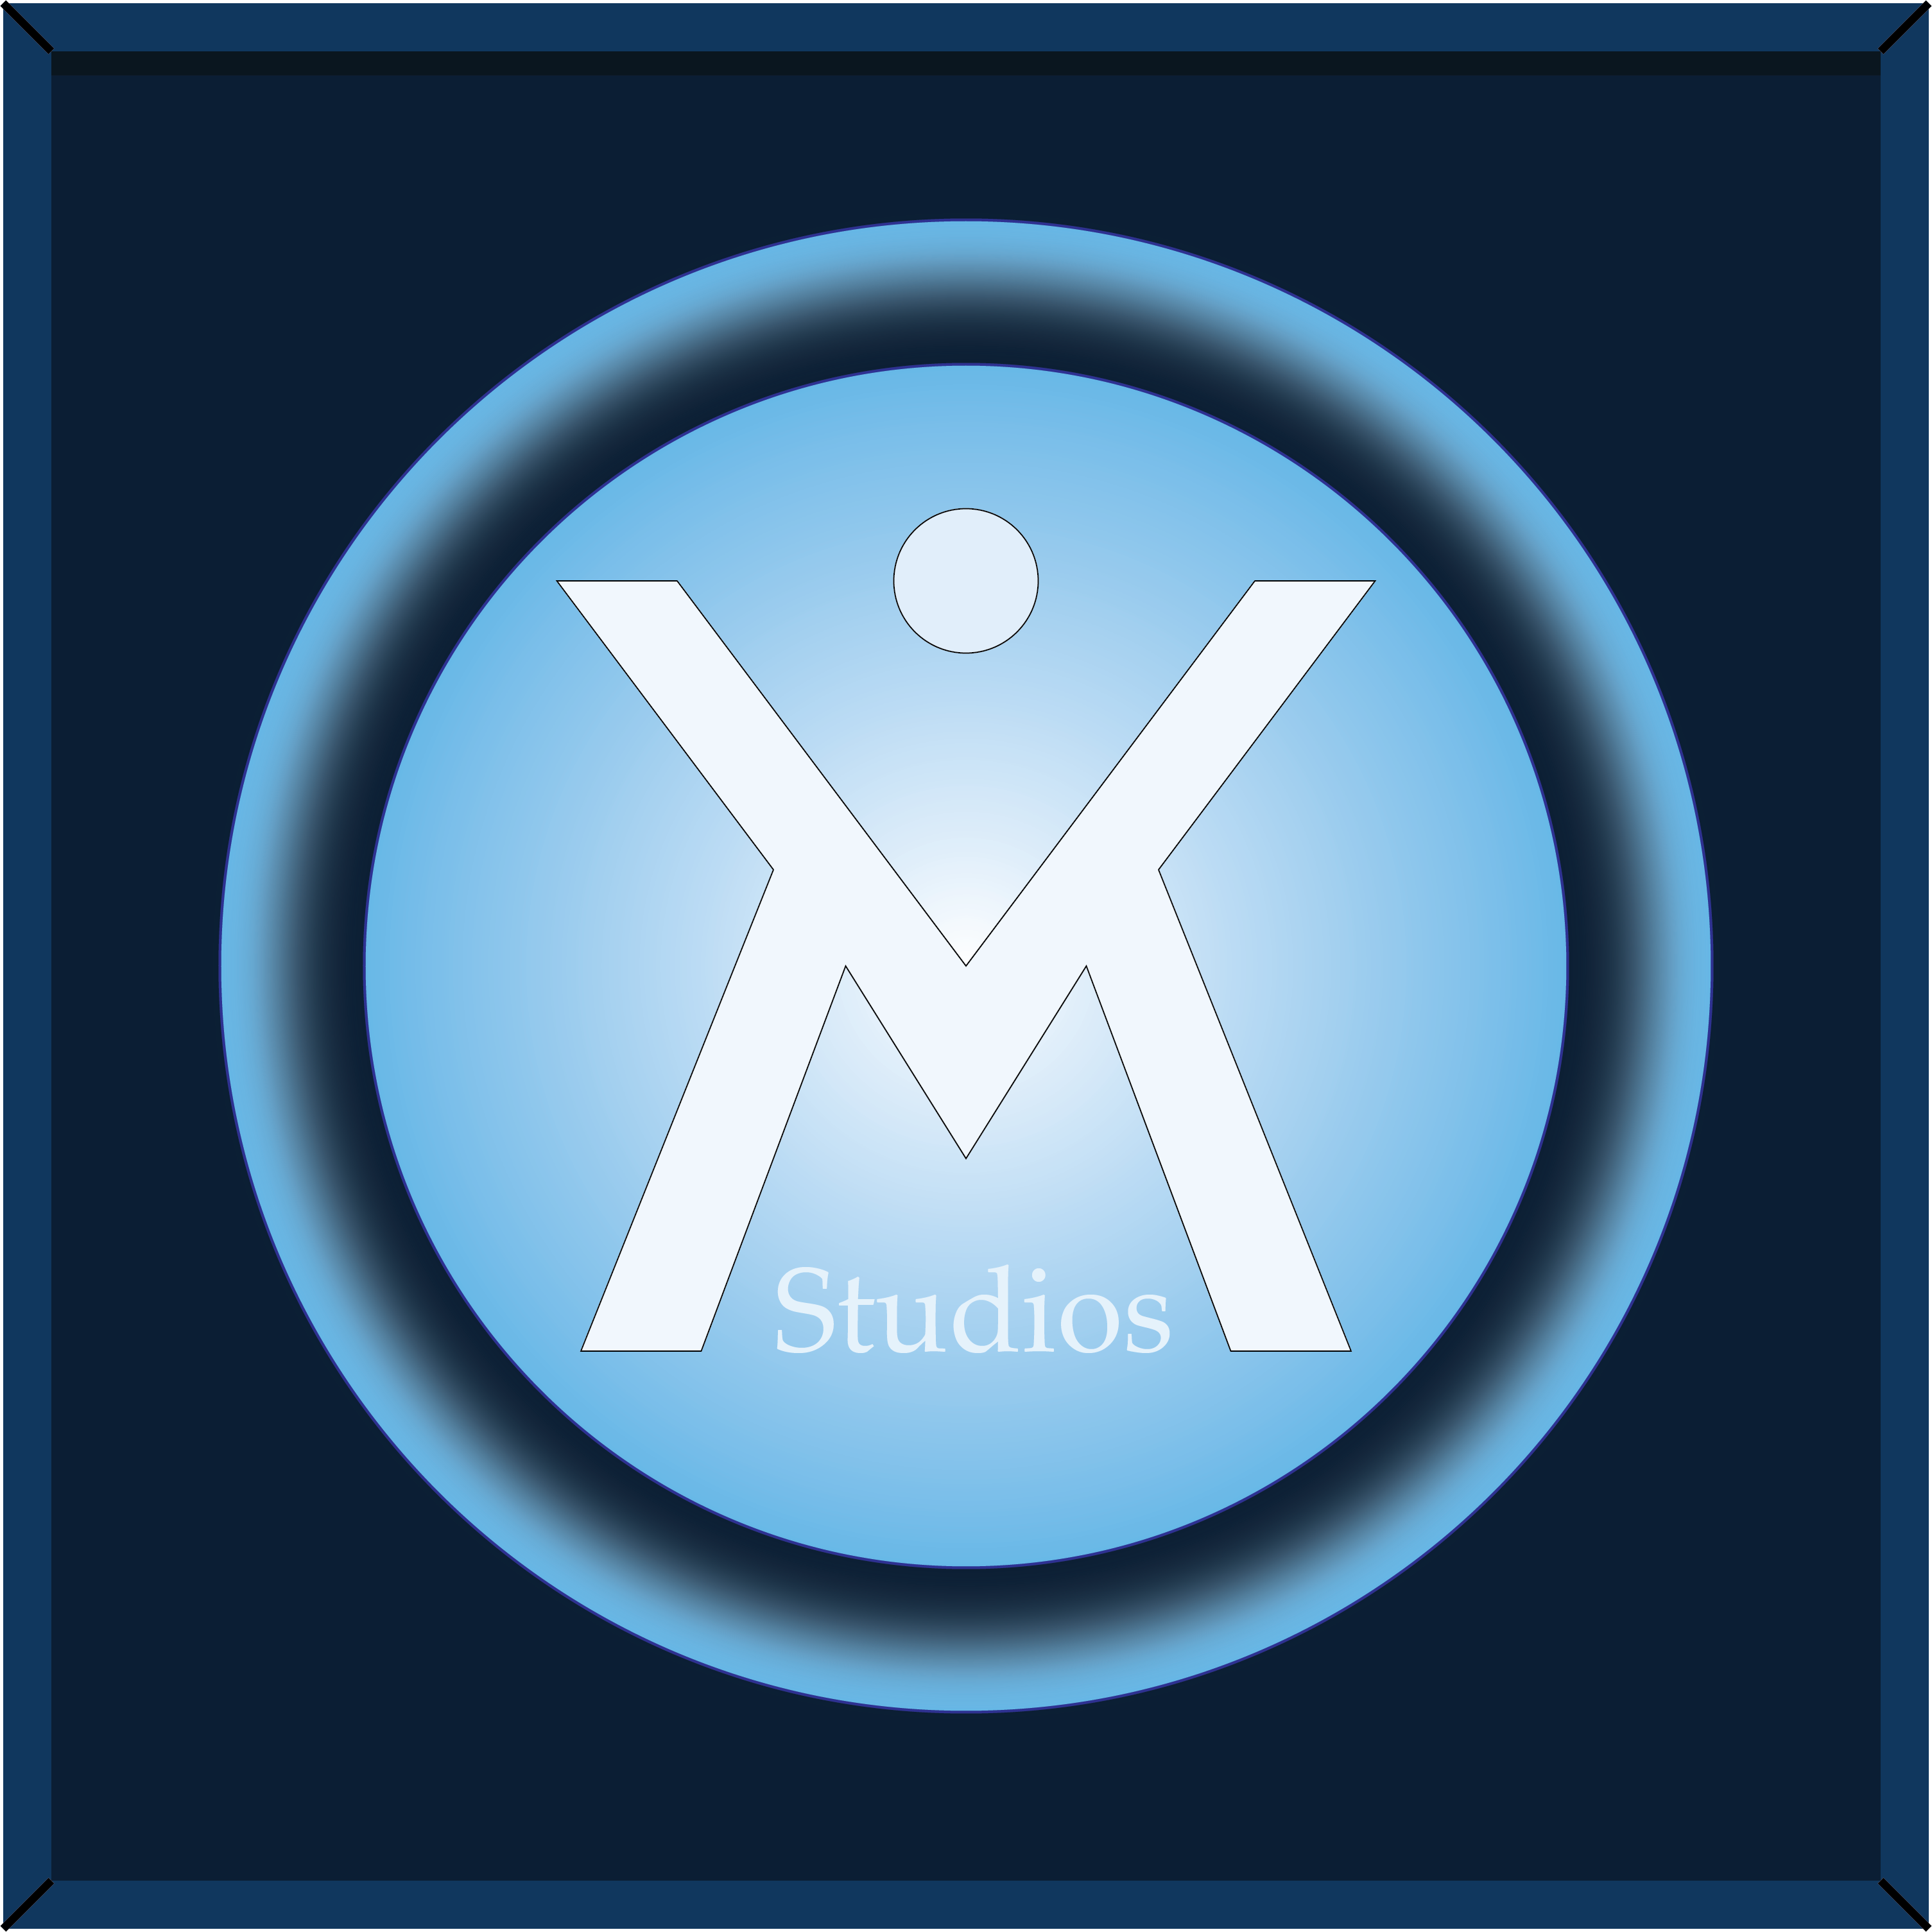 MV Studios